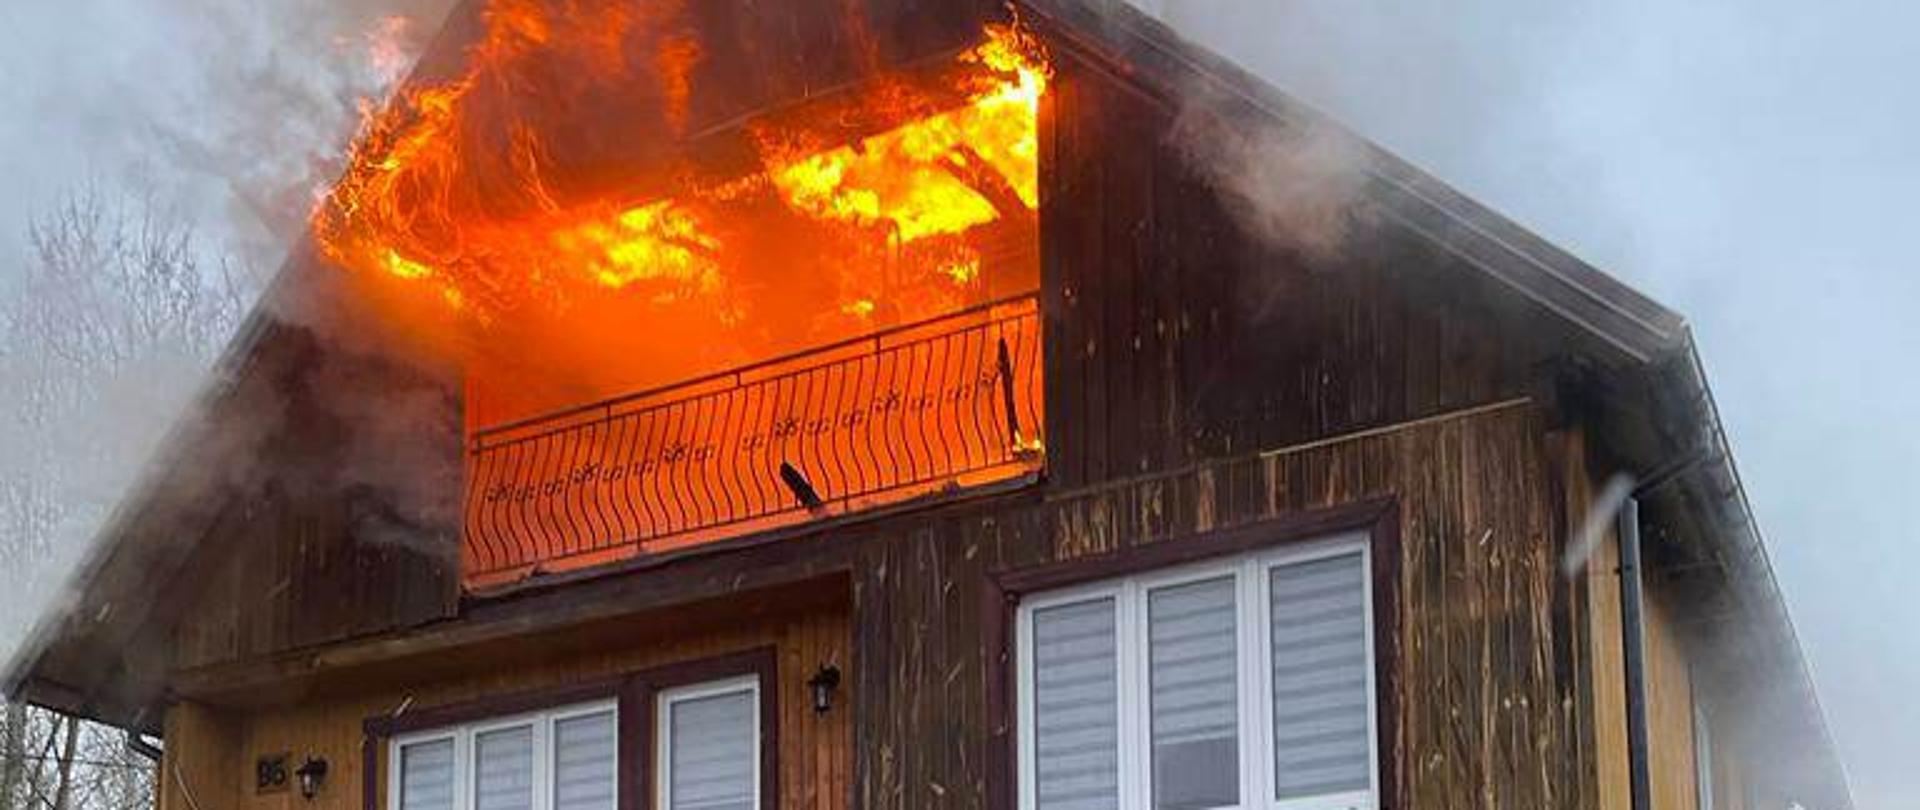 Pożar poddasza użytkowego w domu jednorodzinnym. Widoczny ogień wychodzący na zewnątrz. 